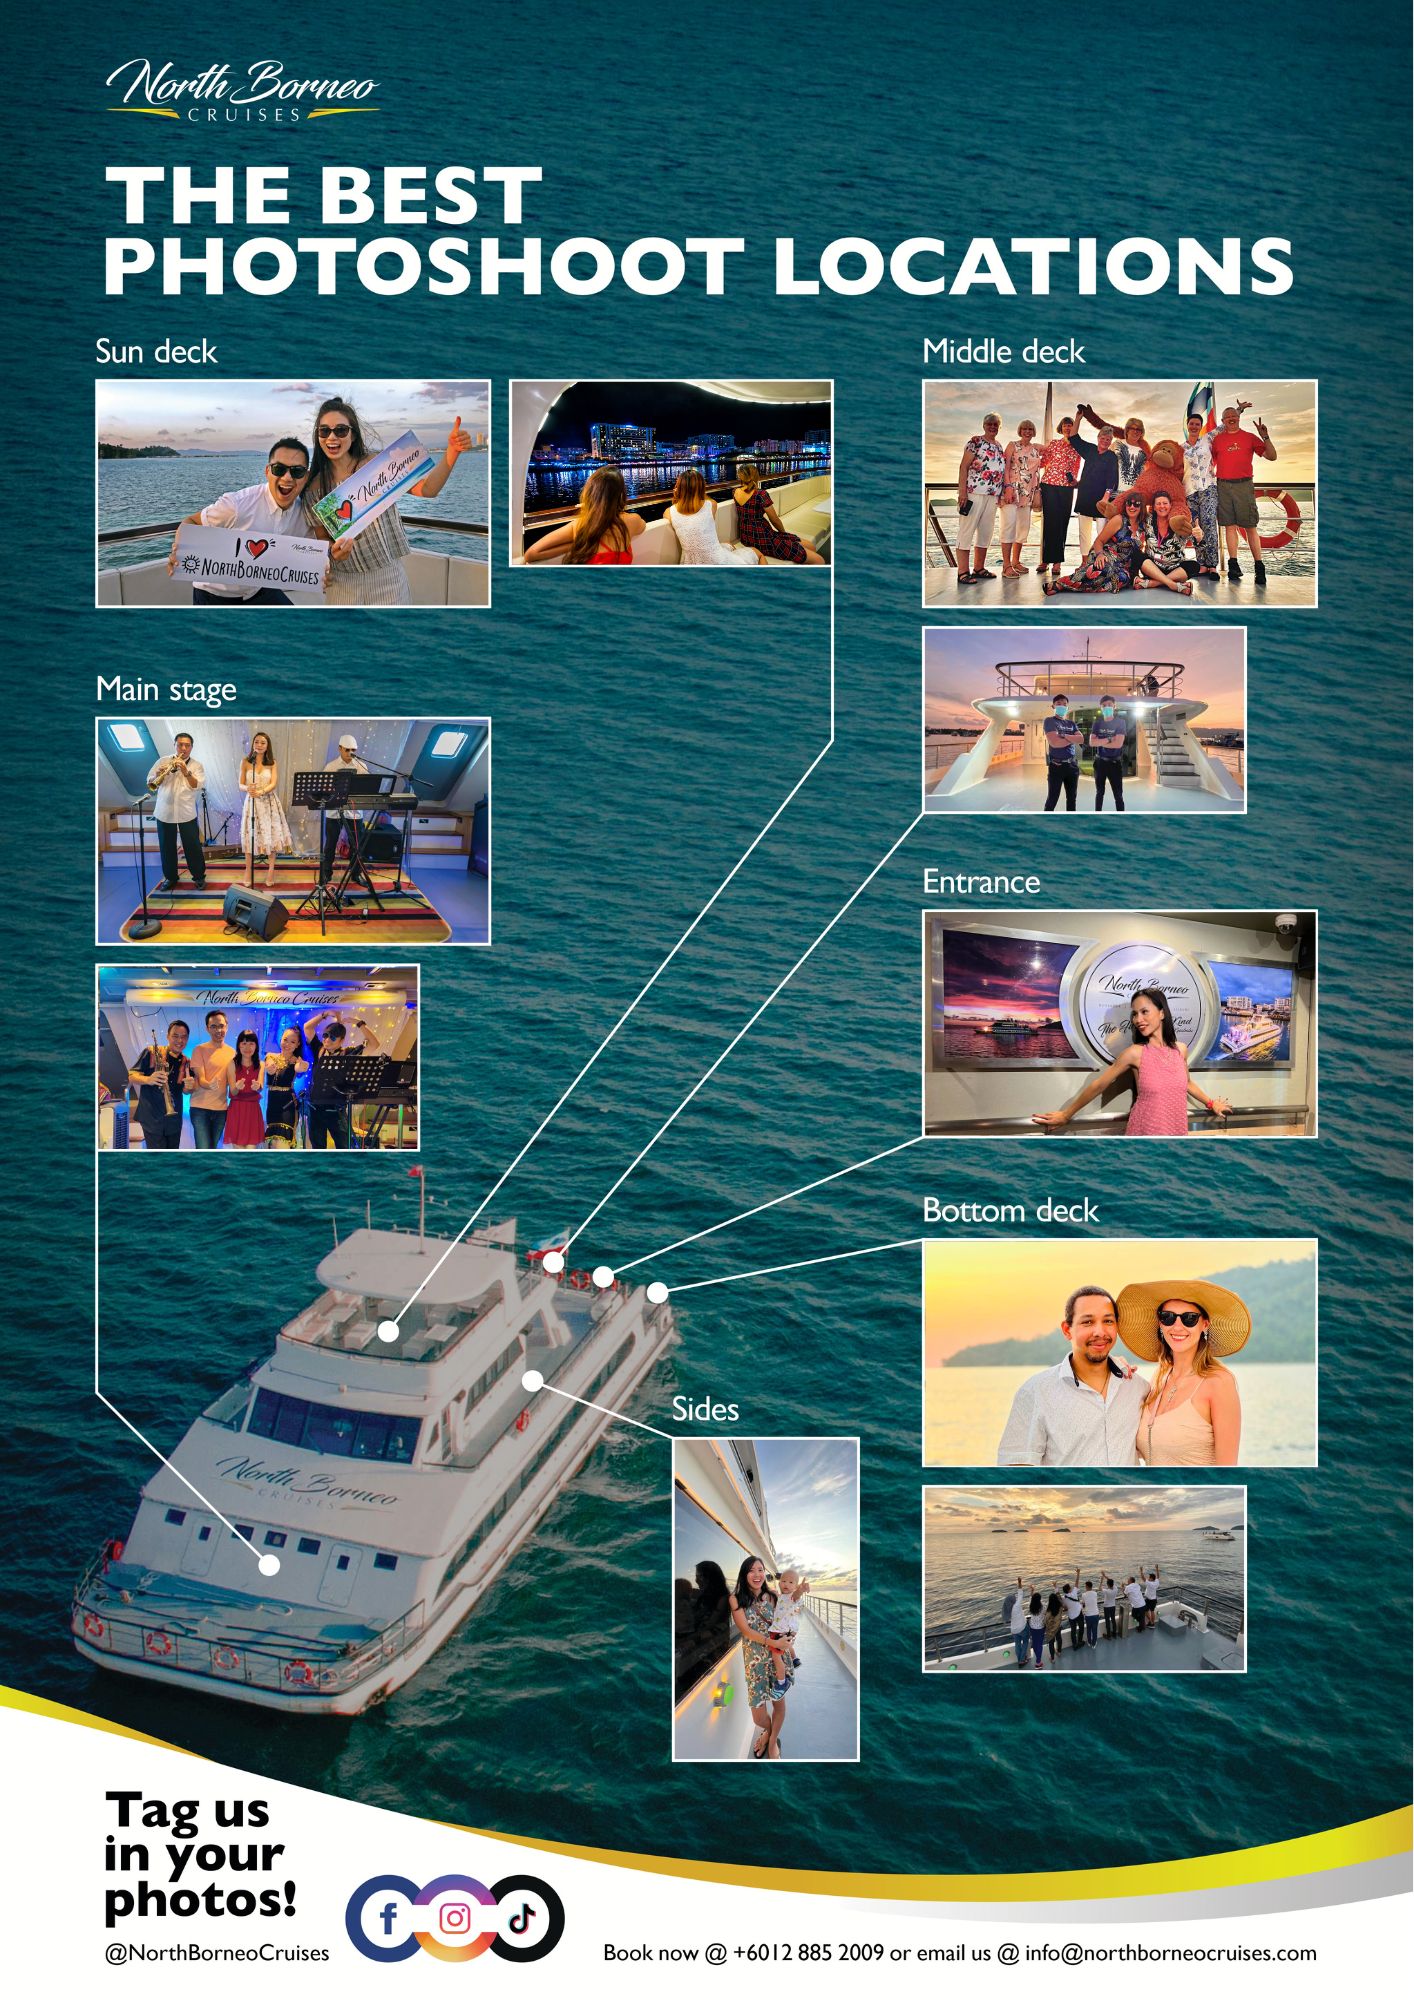 Where to take photos on North Borneo Cruises